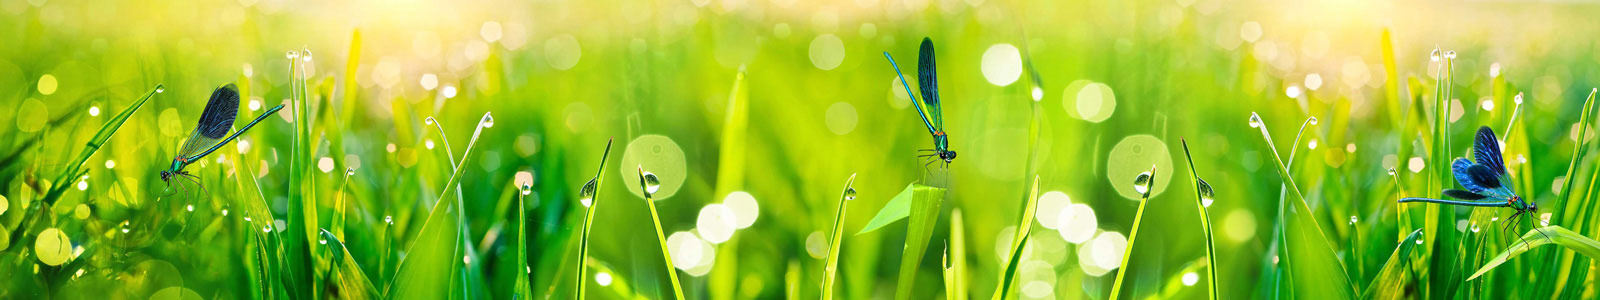 №4920 - Синие стрекозы в утренней траве